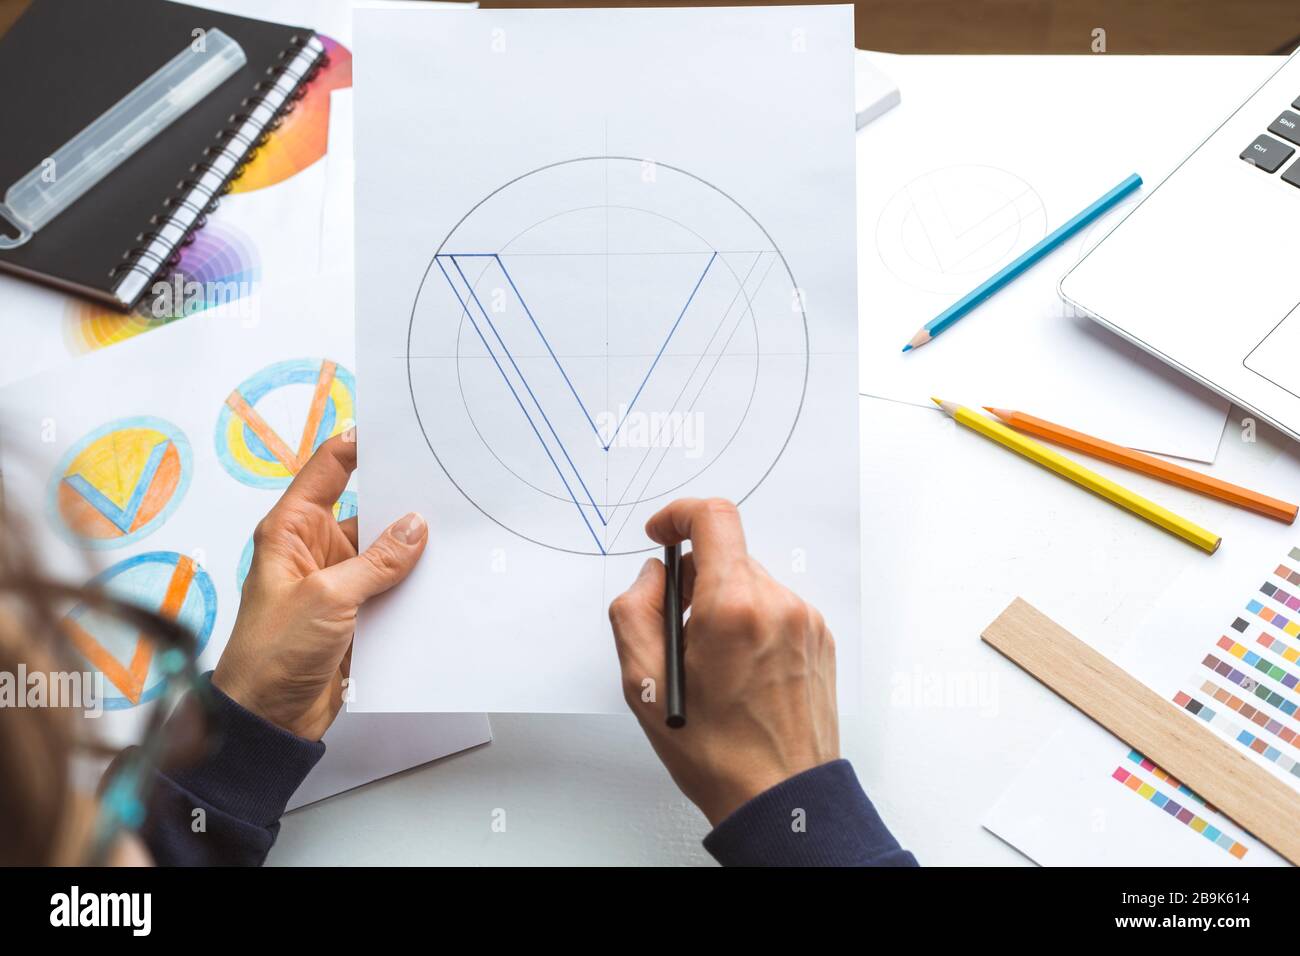 Designer draws a sketch of a brand logo. Stock Photo